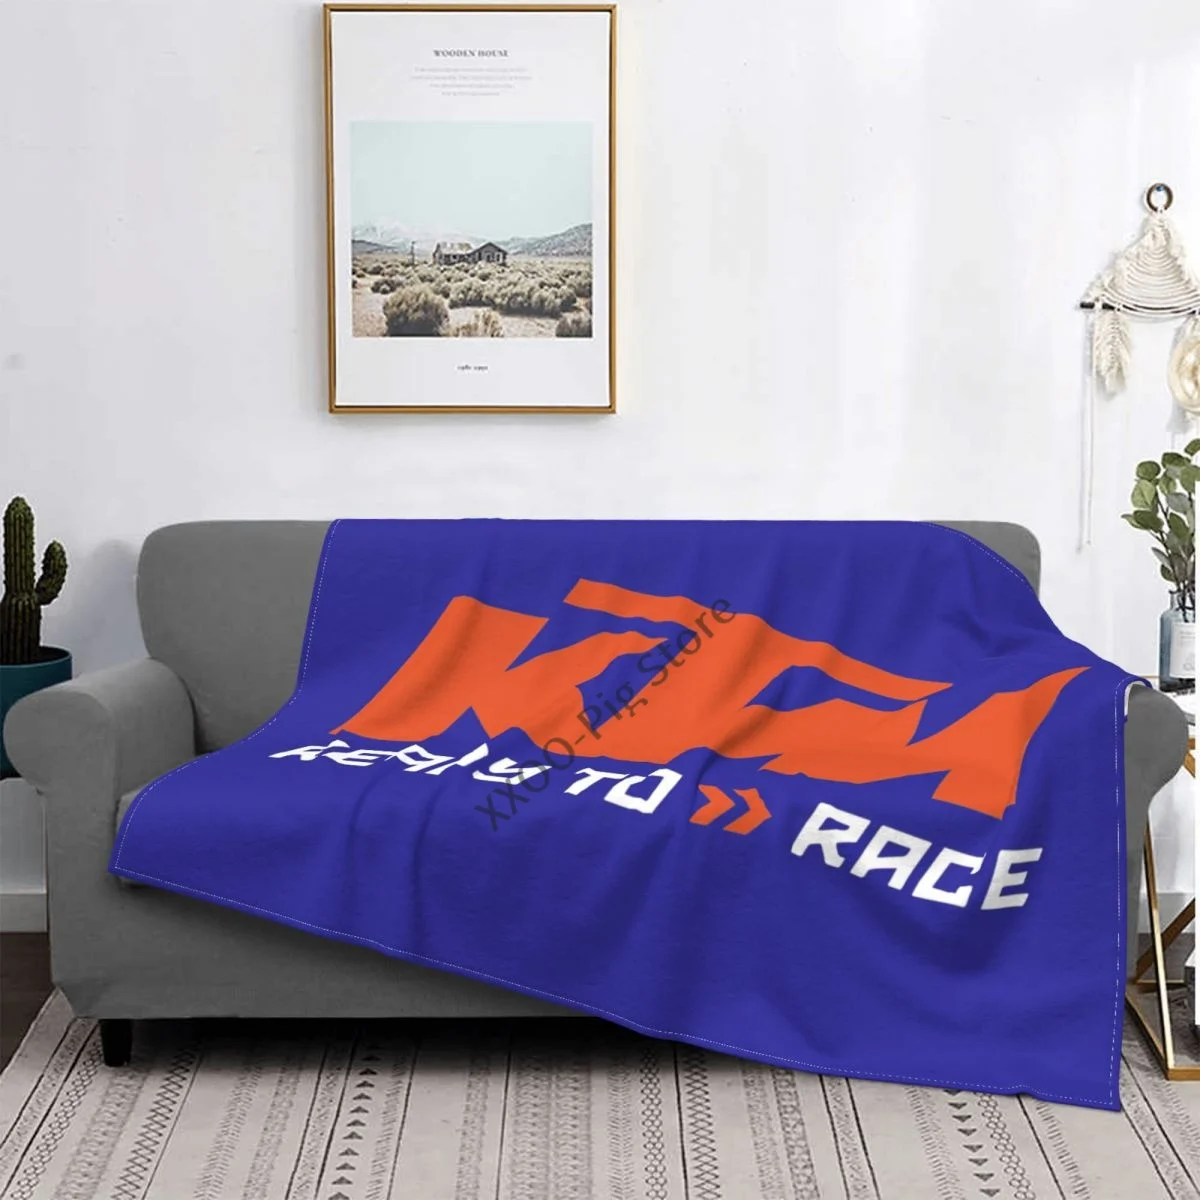 

Ворсистое мягкое одеяло диван/кровать/путешествия Любовь Подарки гонки Ag спорт Мотогонки фабрика гоночный мотоцикл эндуро